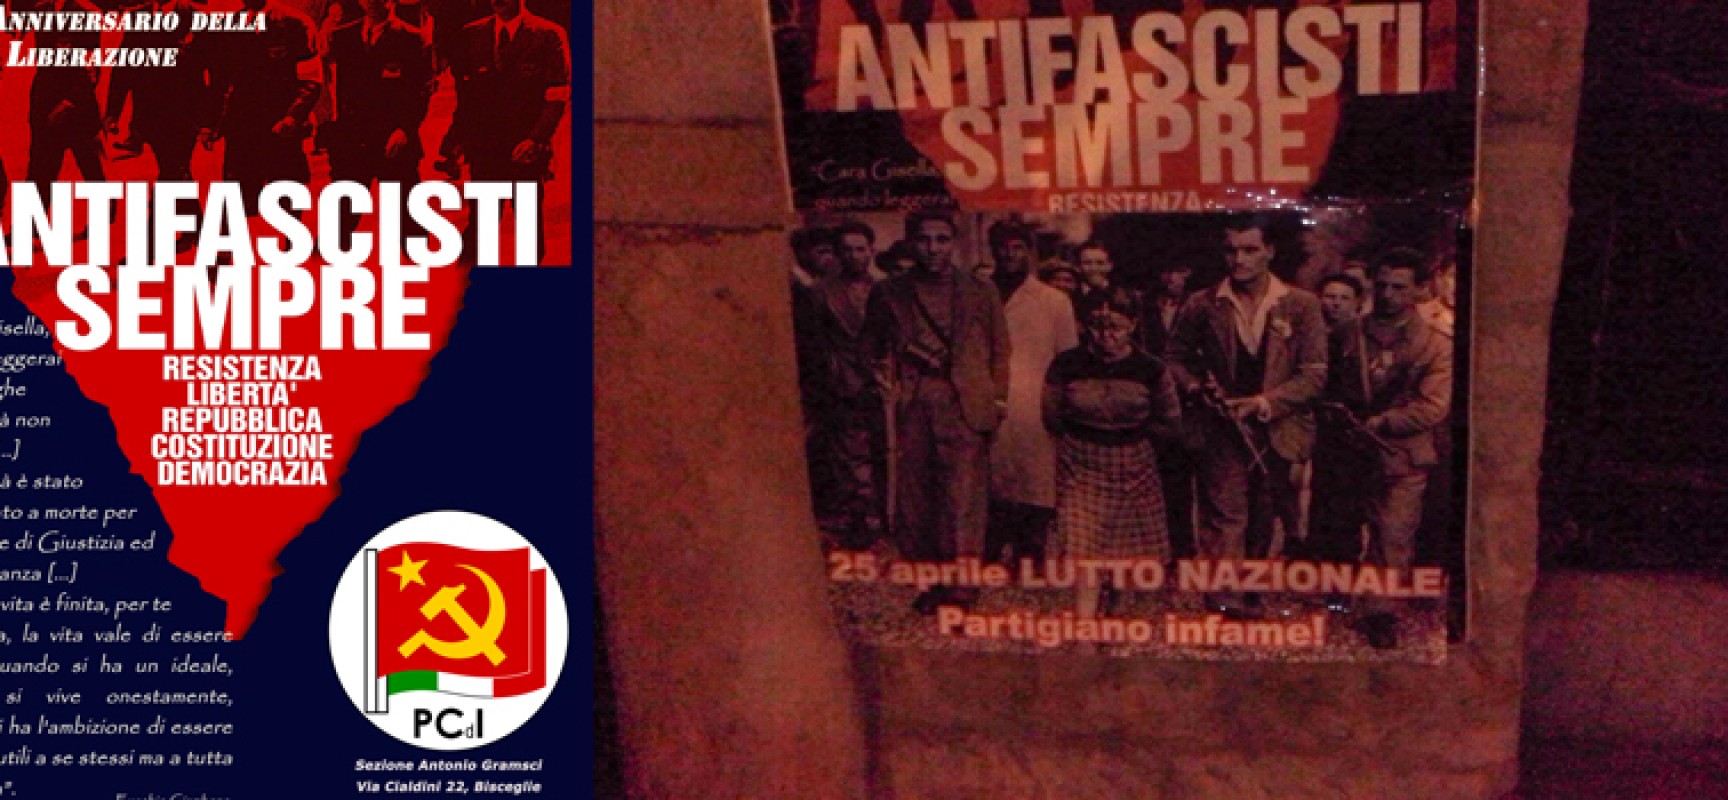 Messaggio neofascista sul manifesto del Pdci dedicato al 70° anniversario della Liberazione